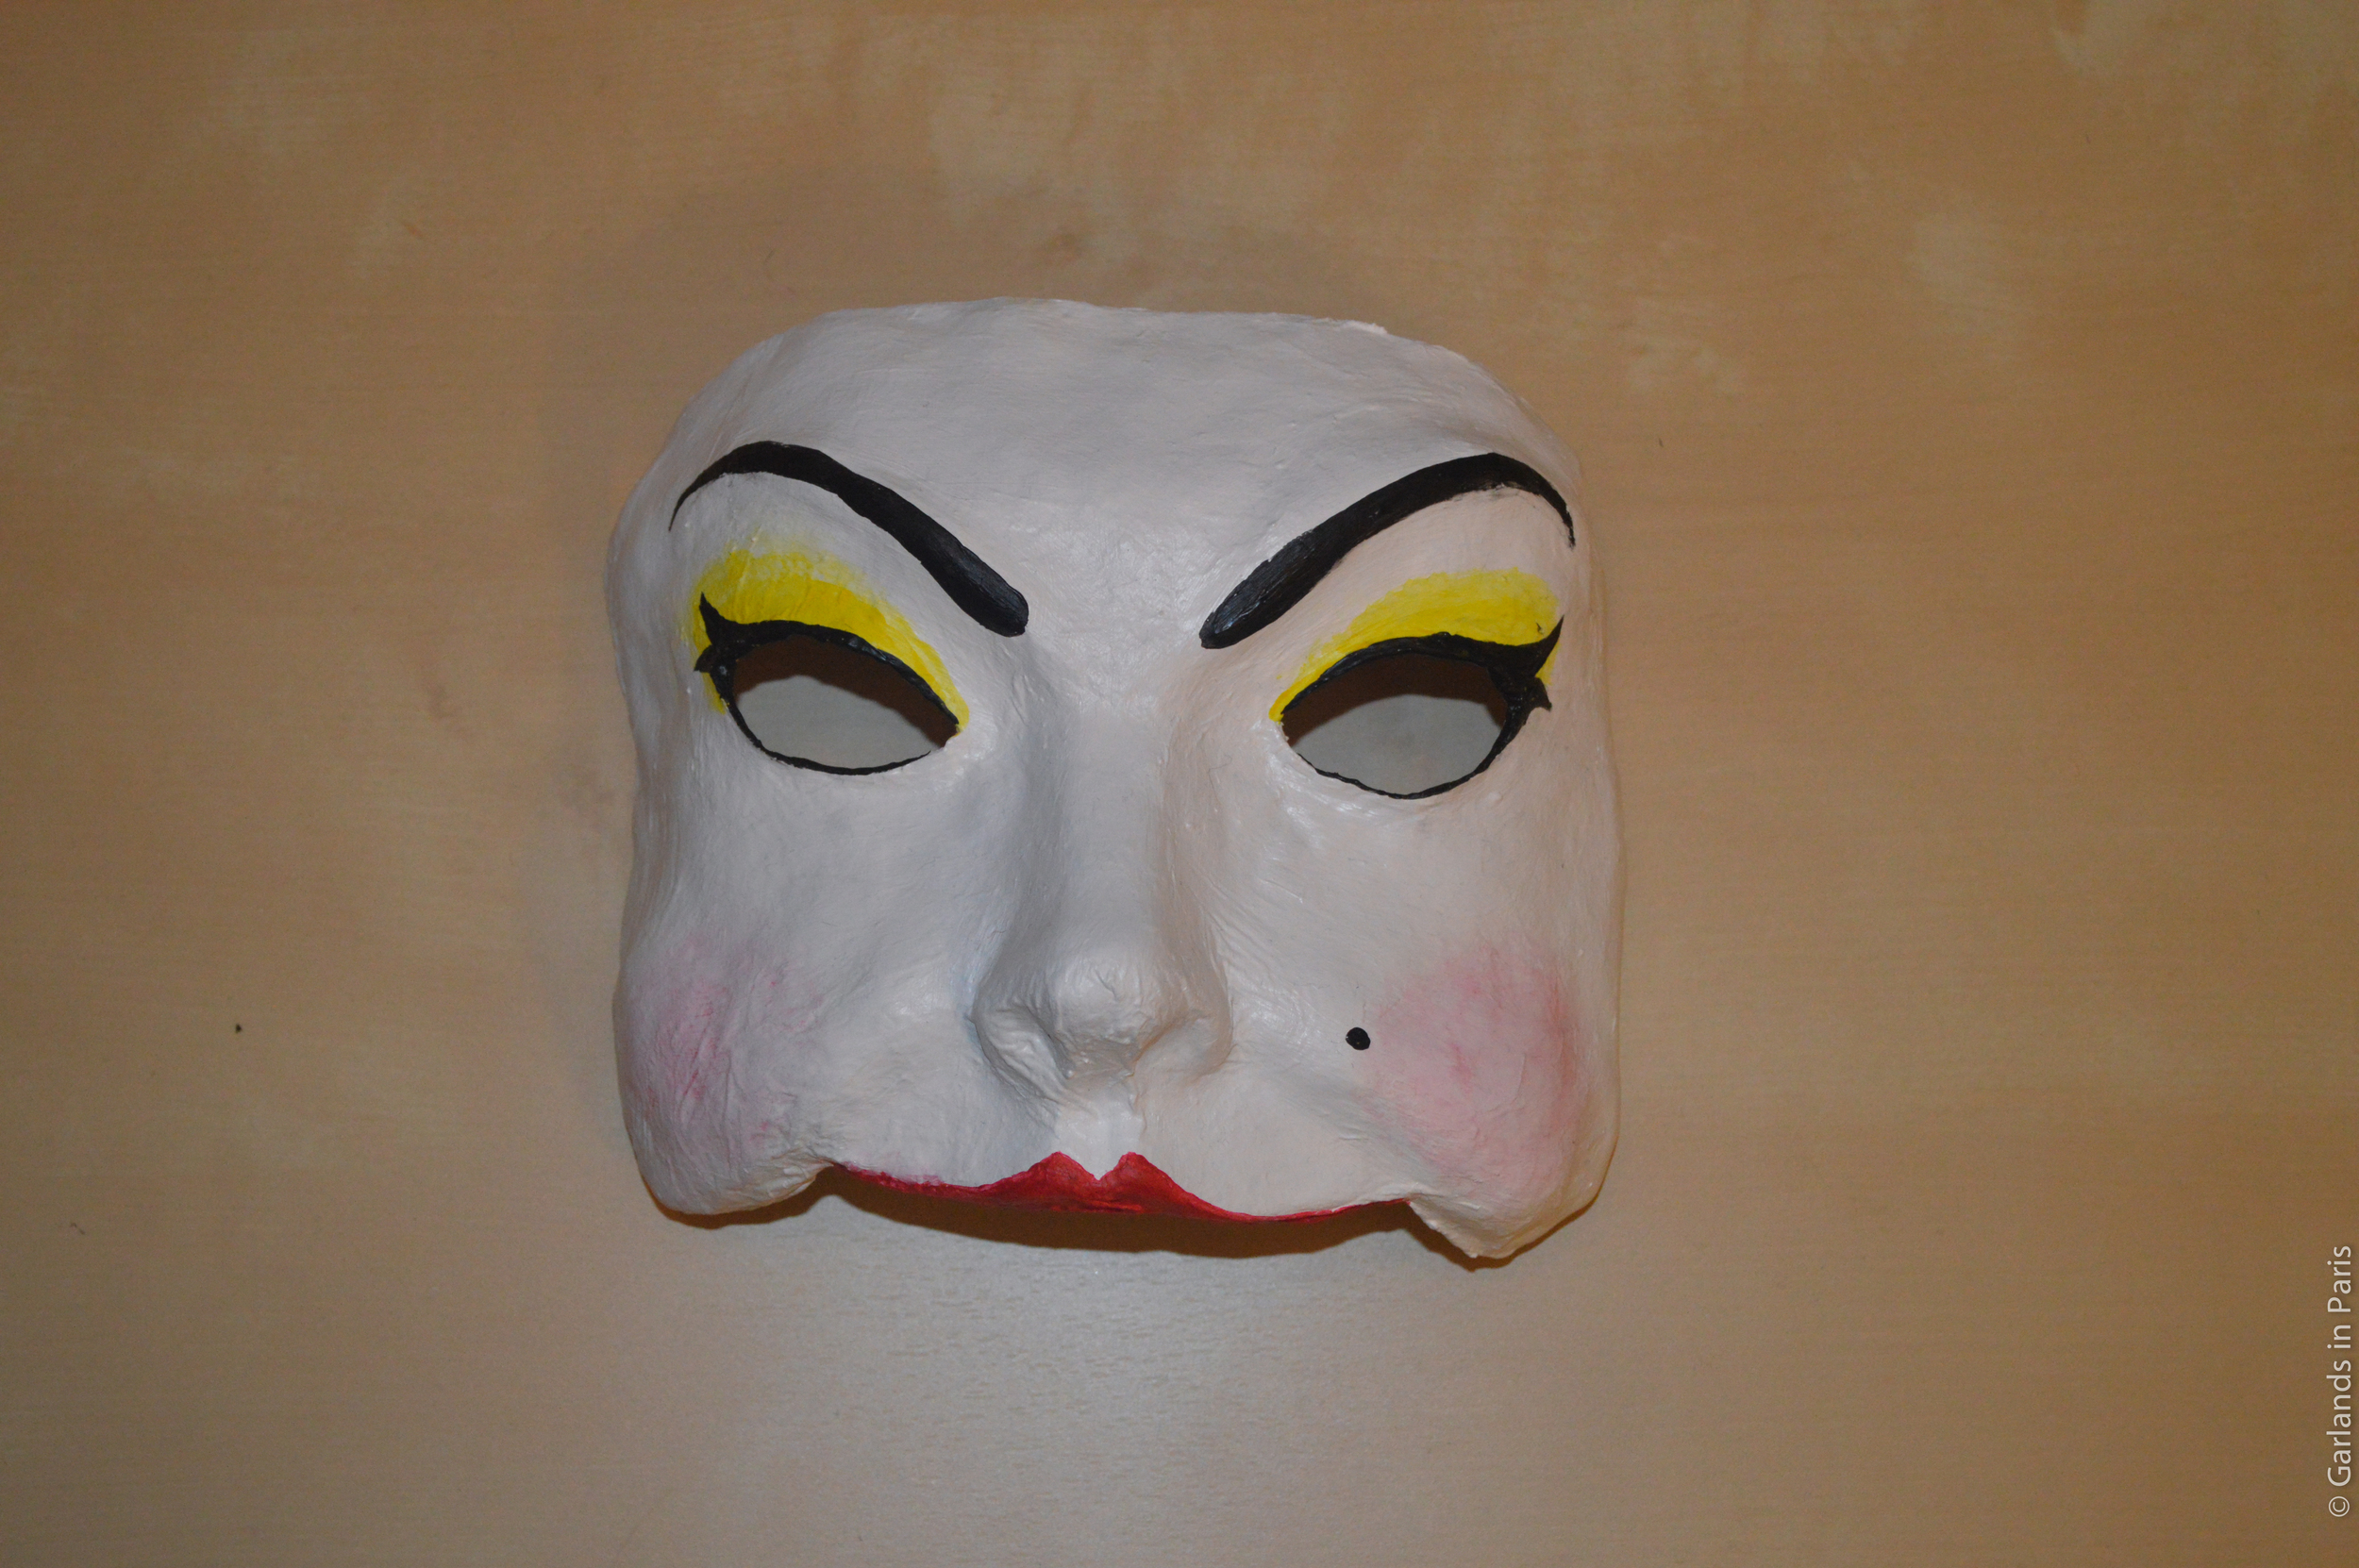 Making a Papier-mâché Mask — Marina Gross-Hoy